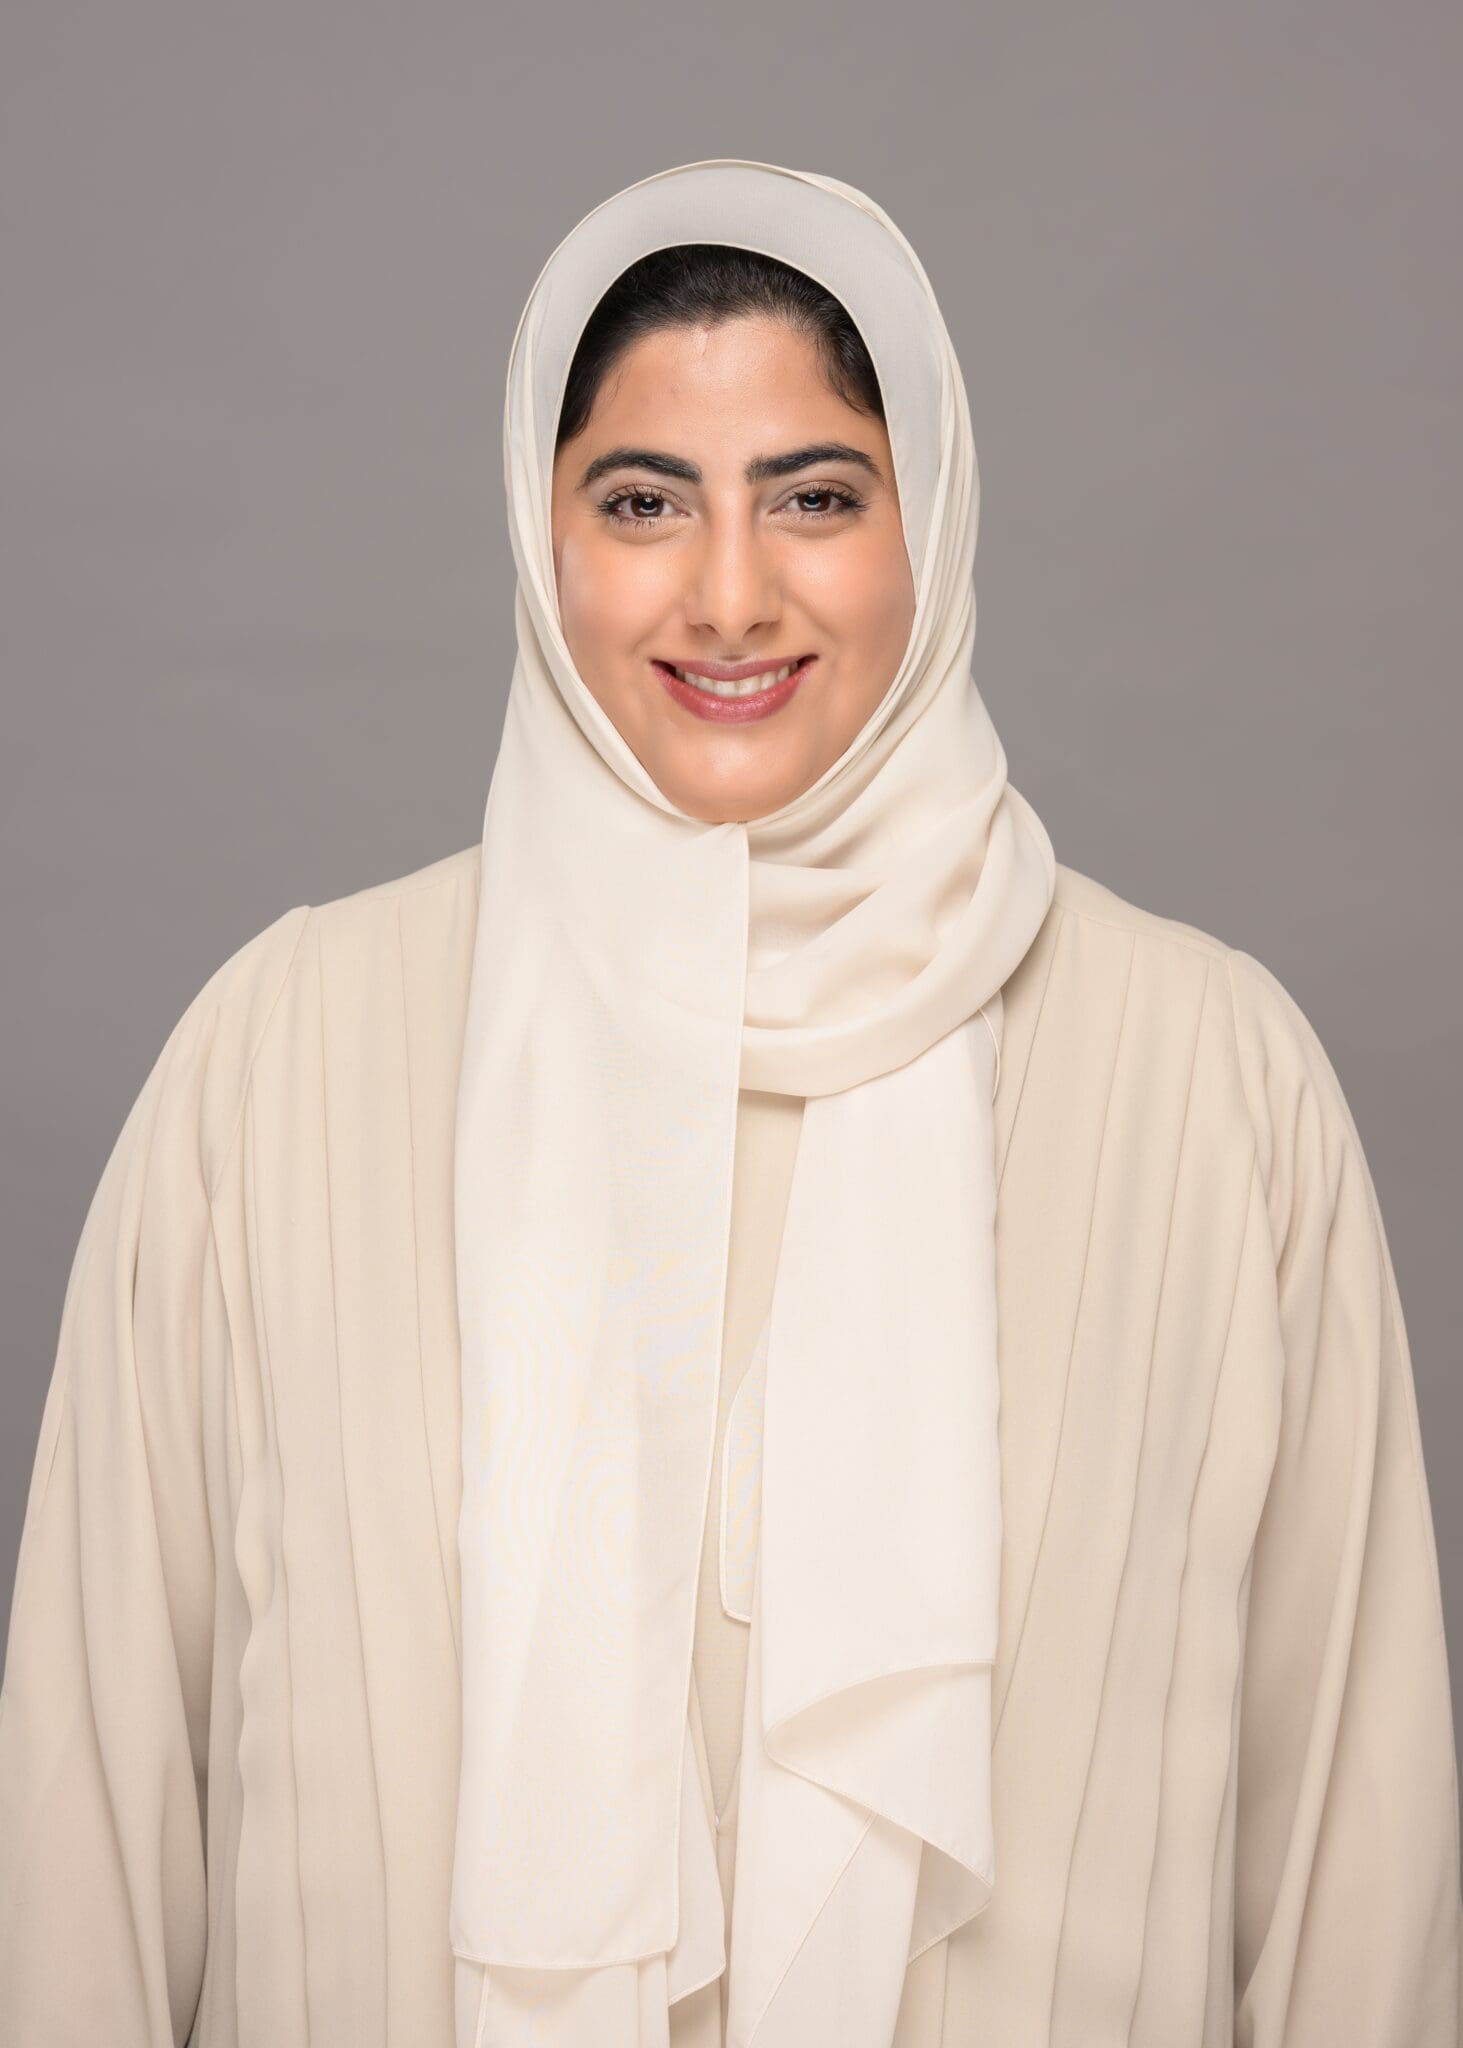 Her Highness Sheikha Shamma Bint Sultan Bin Khalifa Al Nahyan Icrw 